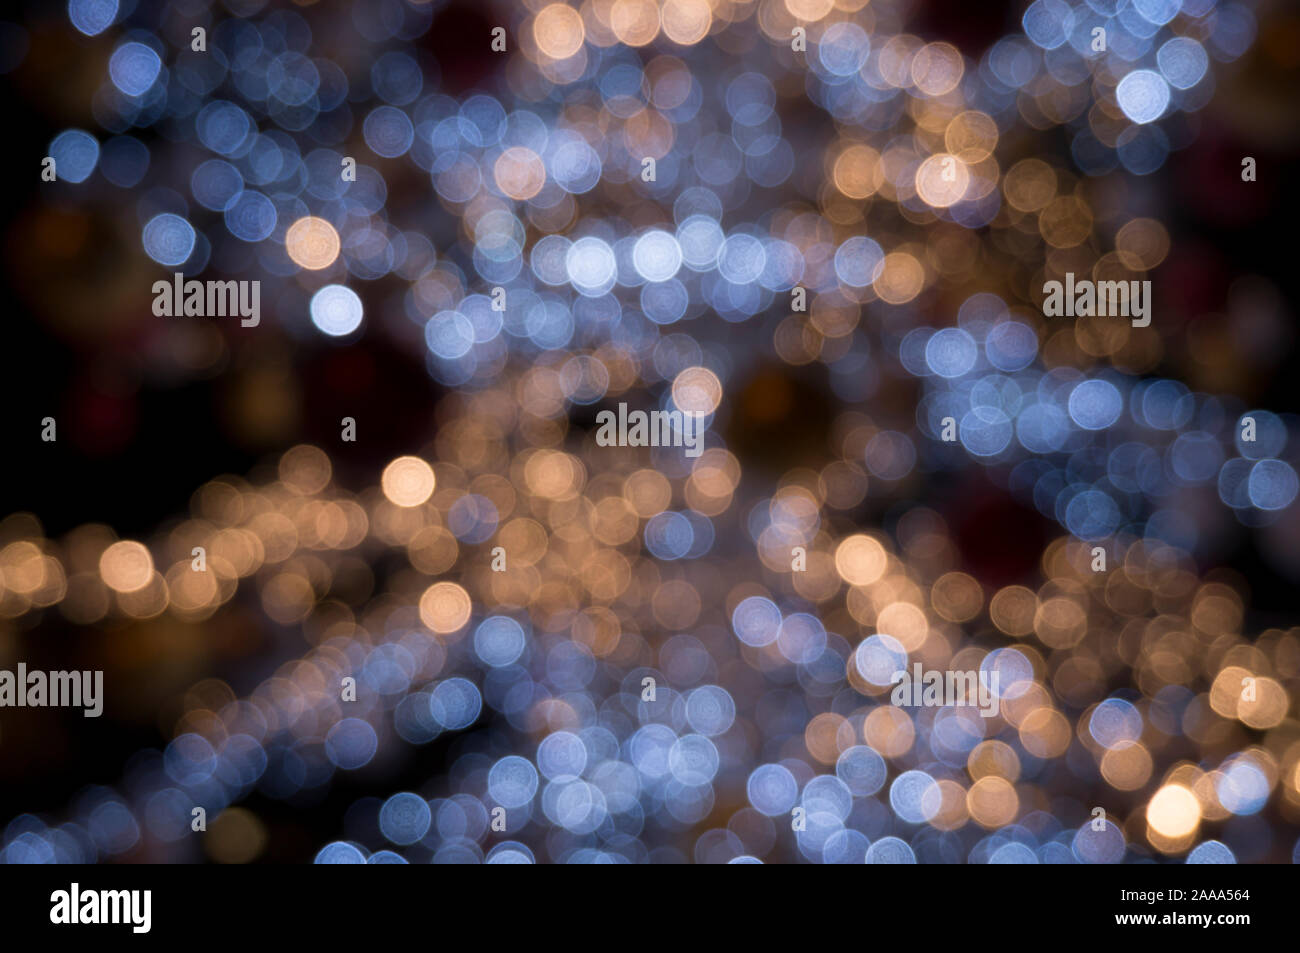 Abstract blur bokeh belle lumière en ville la nuit. Idée spécial arrière-plan. Concept d'éclairage de Noël, nuit, lumière des villes urbaines magie, surprise Banque D'Images